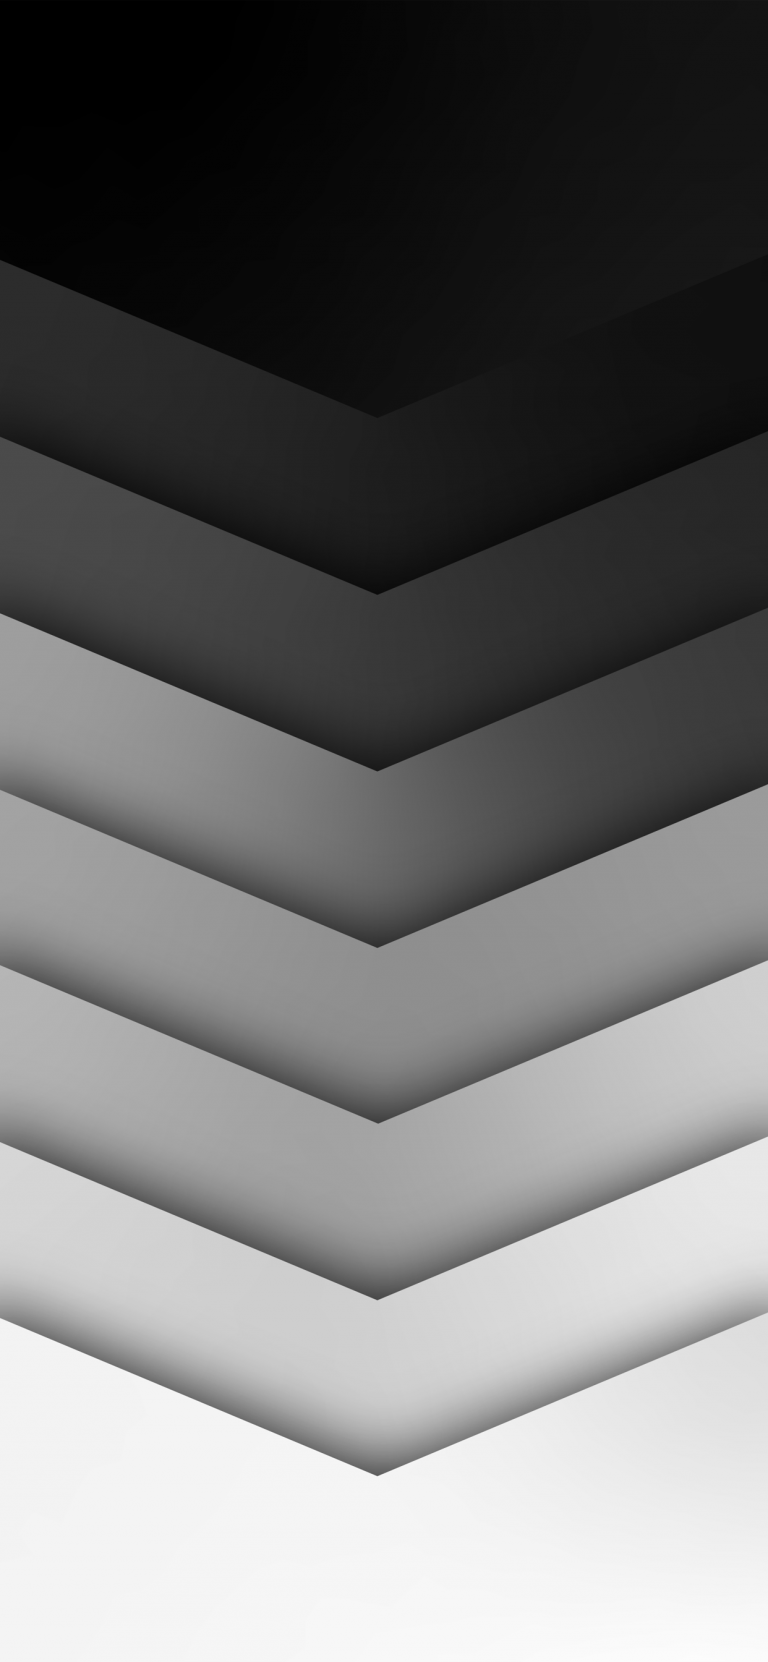 White-dark-pattern-iphone-wallpaper-arthur-schrinemacher-768×1662